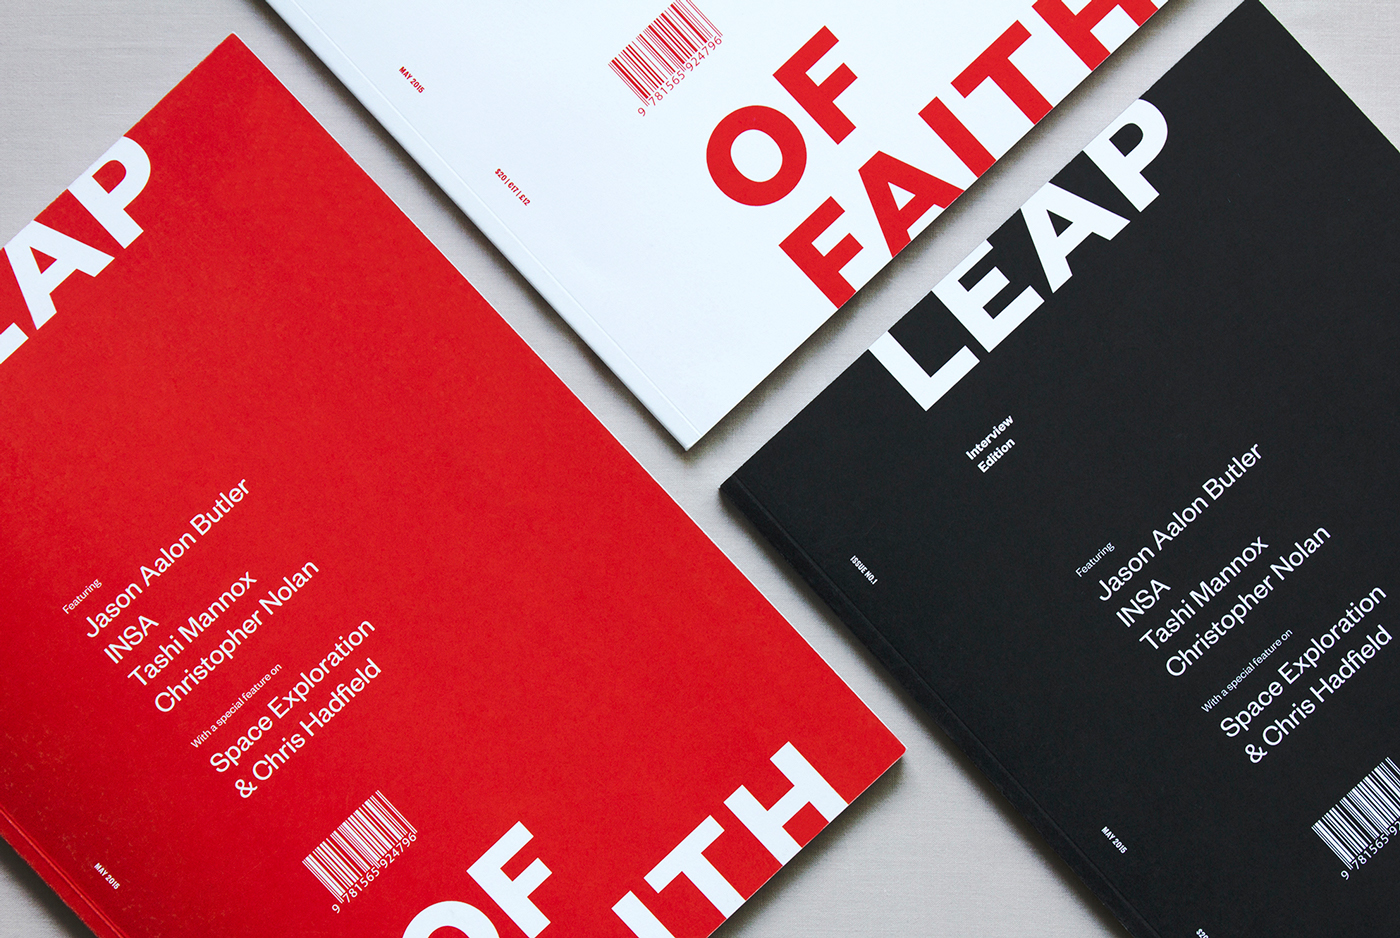 Leap of Faith杂志设计欣赏